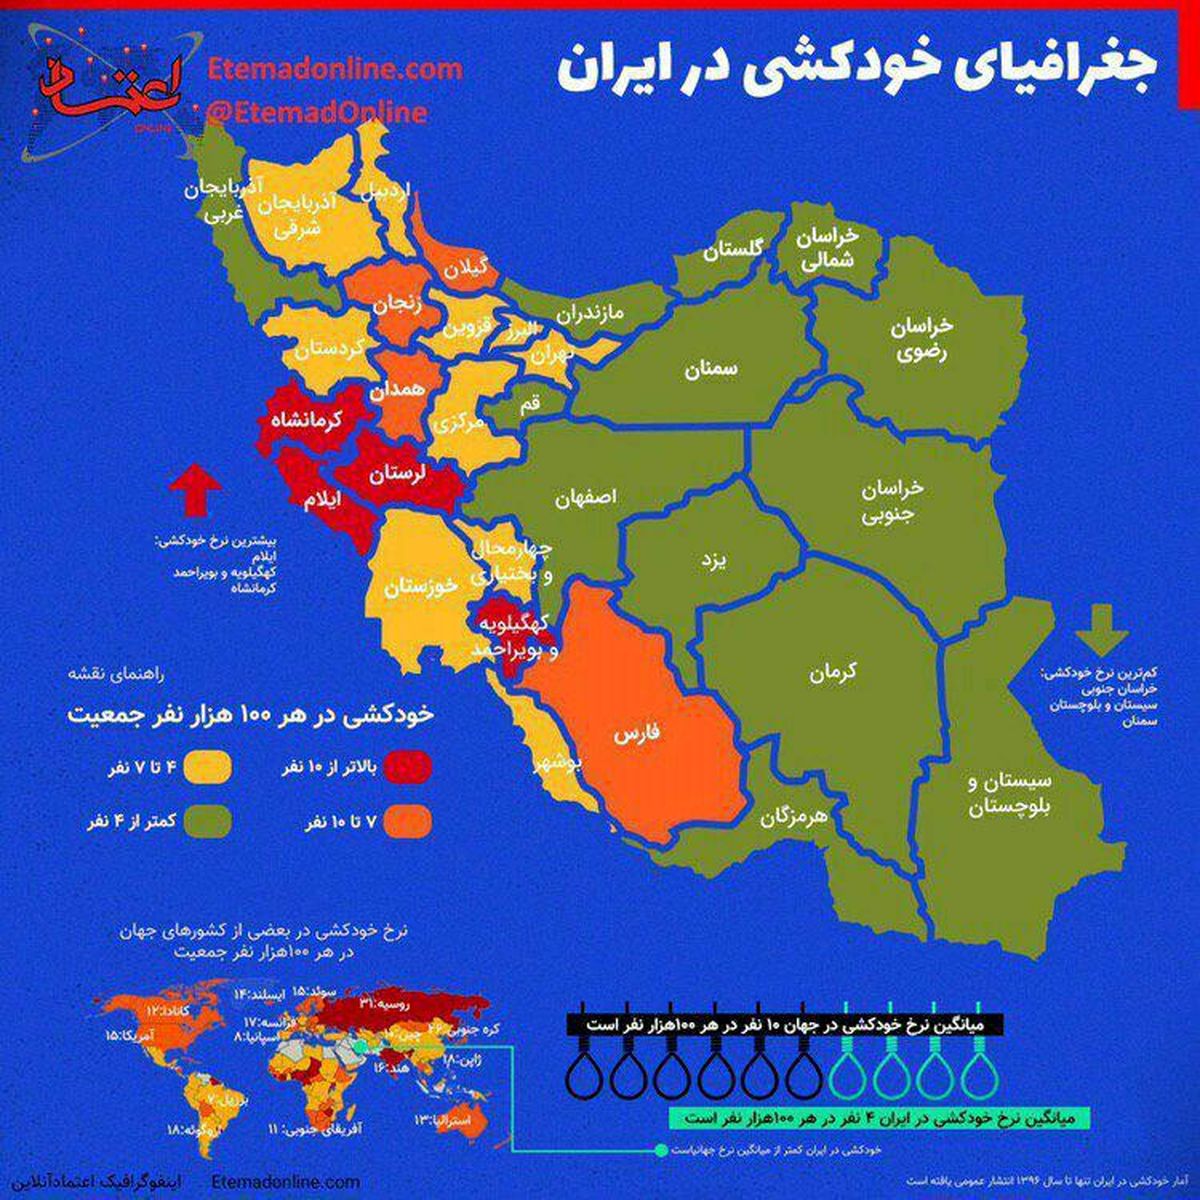 اینفوگرافی/ آمار خودکشی در ایران؛ کدام استانها بیشترین تعداد را دارند؟